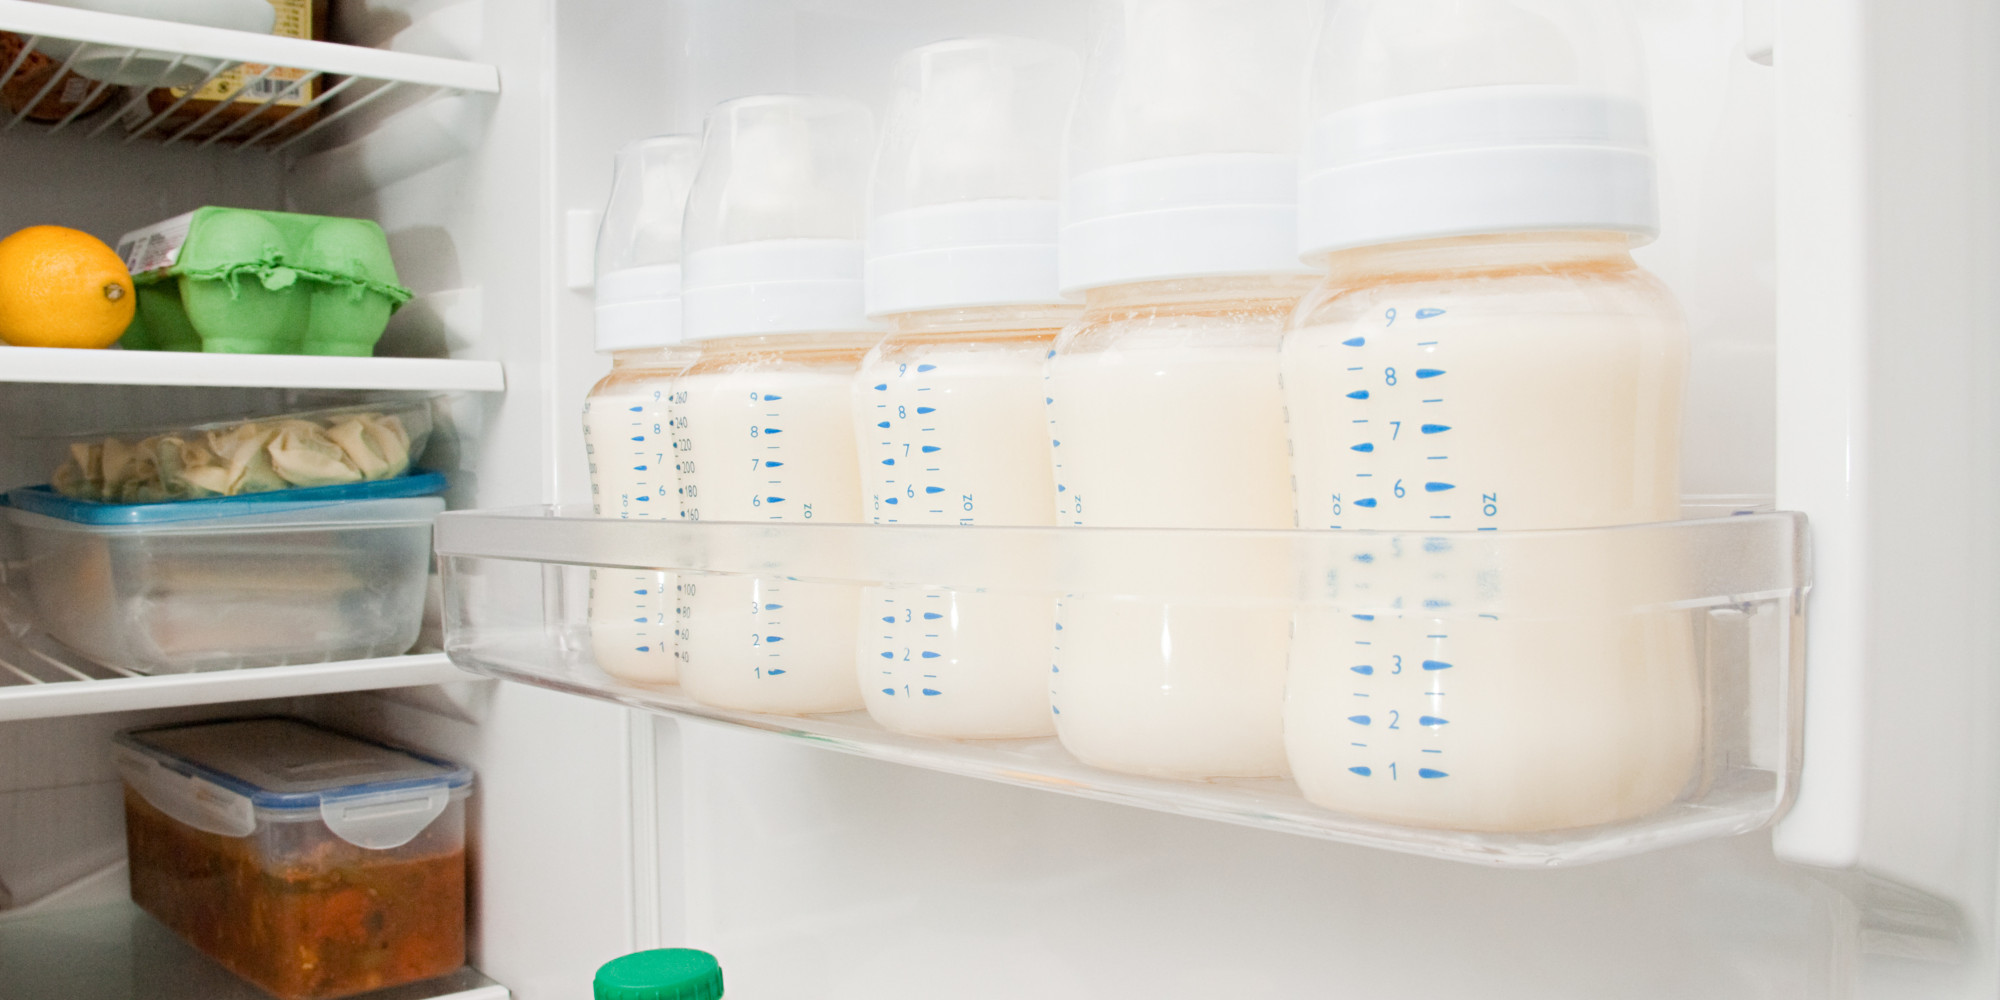 Градусник поможет поддерживать оптимальную температуру молока